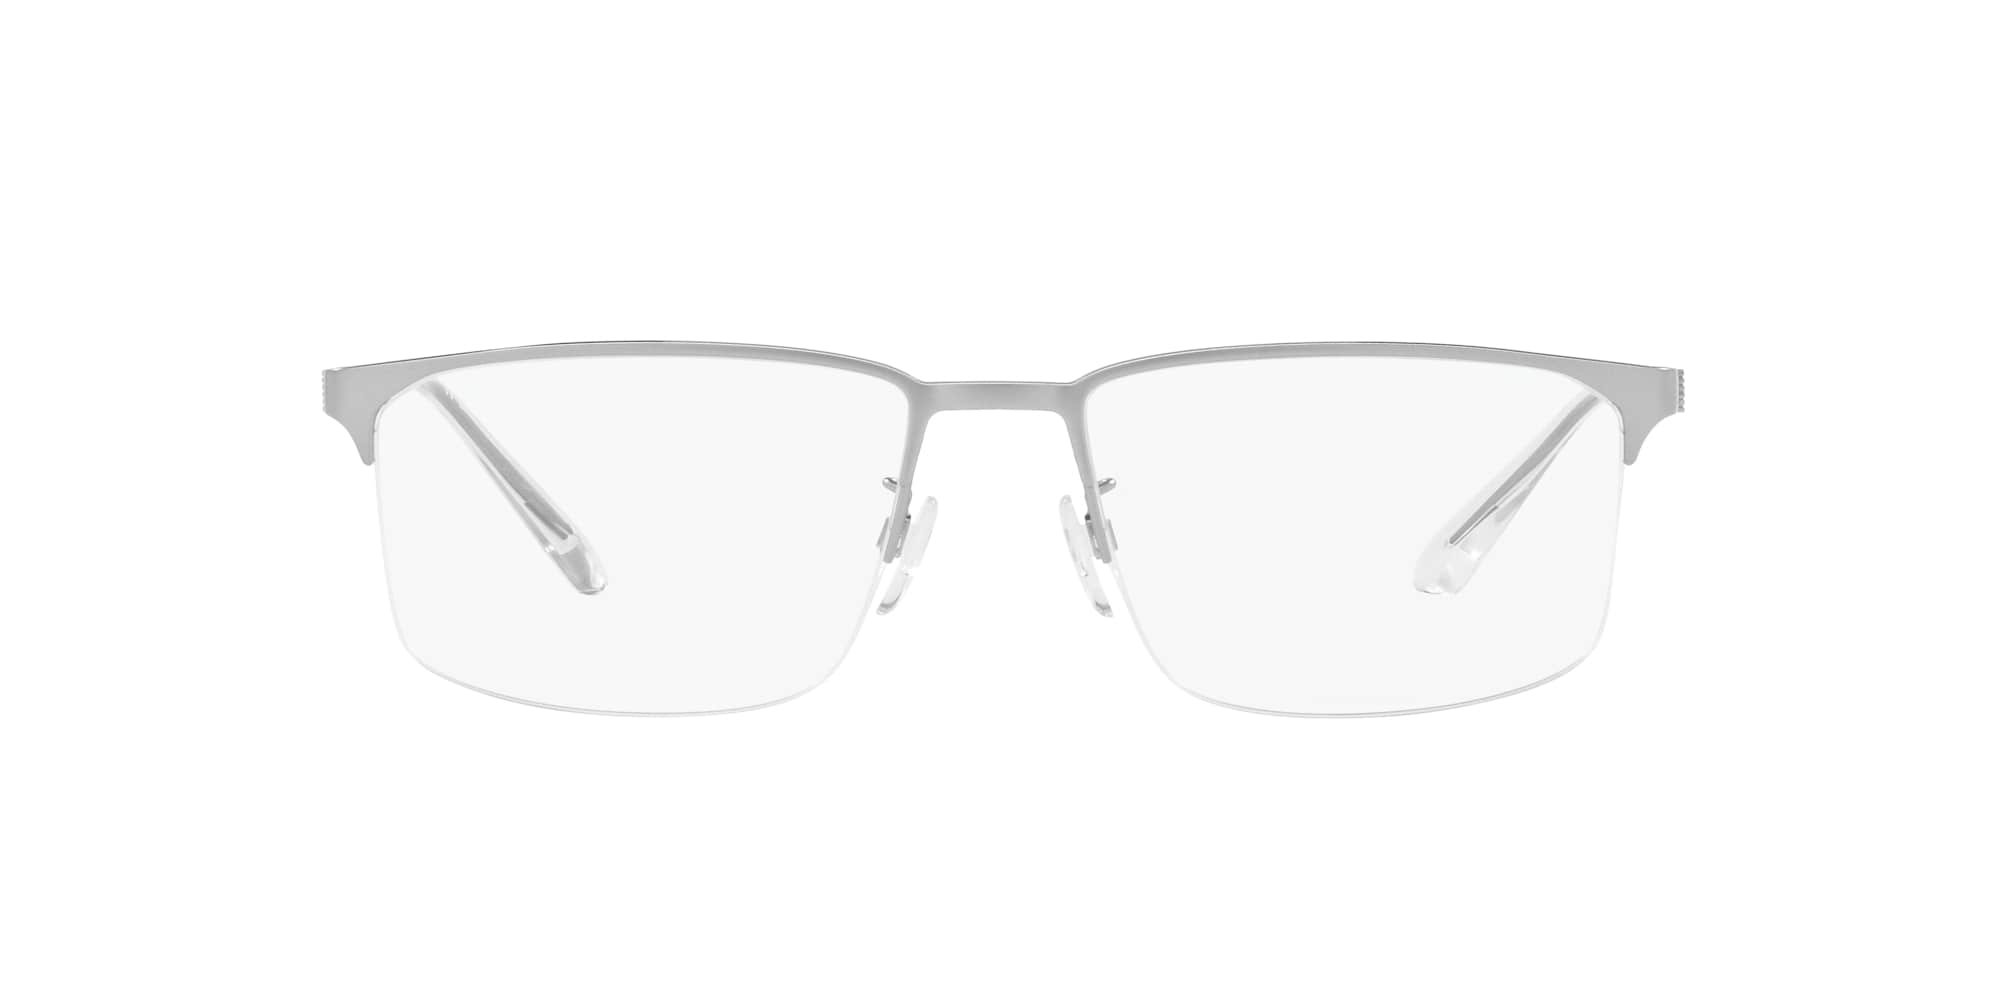 Das Bild zeigt die Korrektionsbrille EA1143 3045 von der Marke Emporio Armani in Silber.